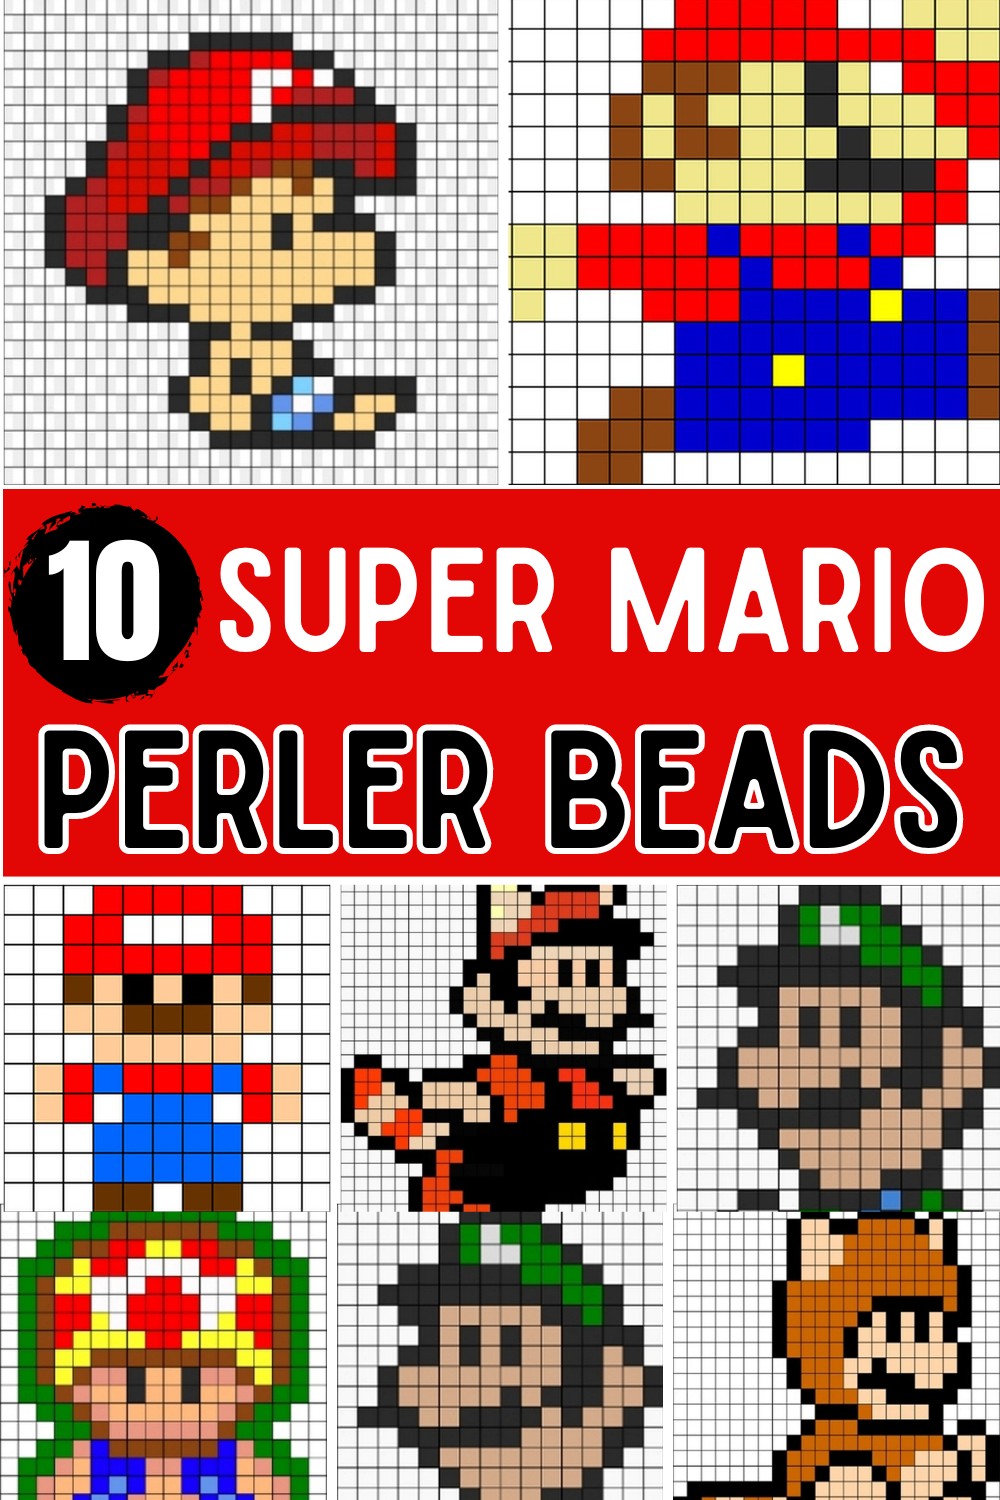 Super Mario Perler Bead Patterns